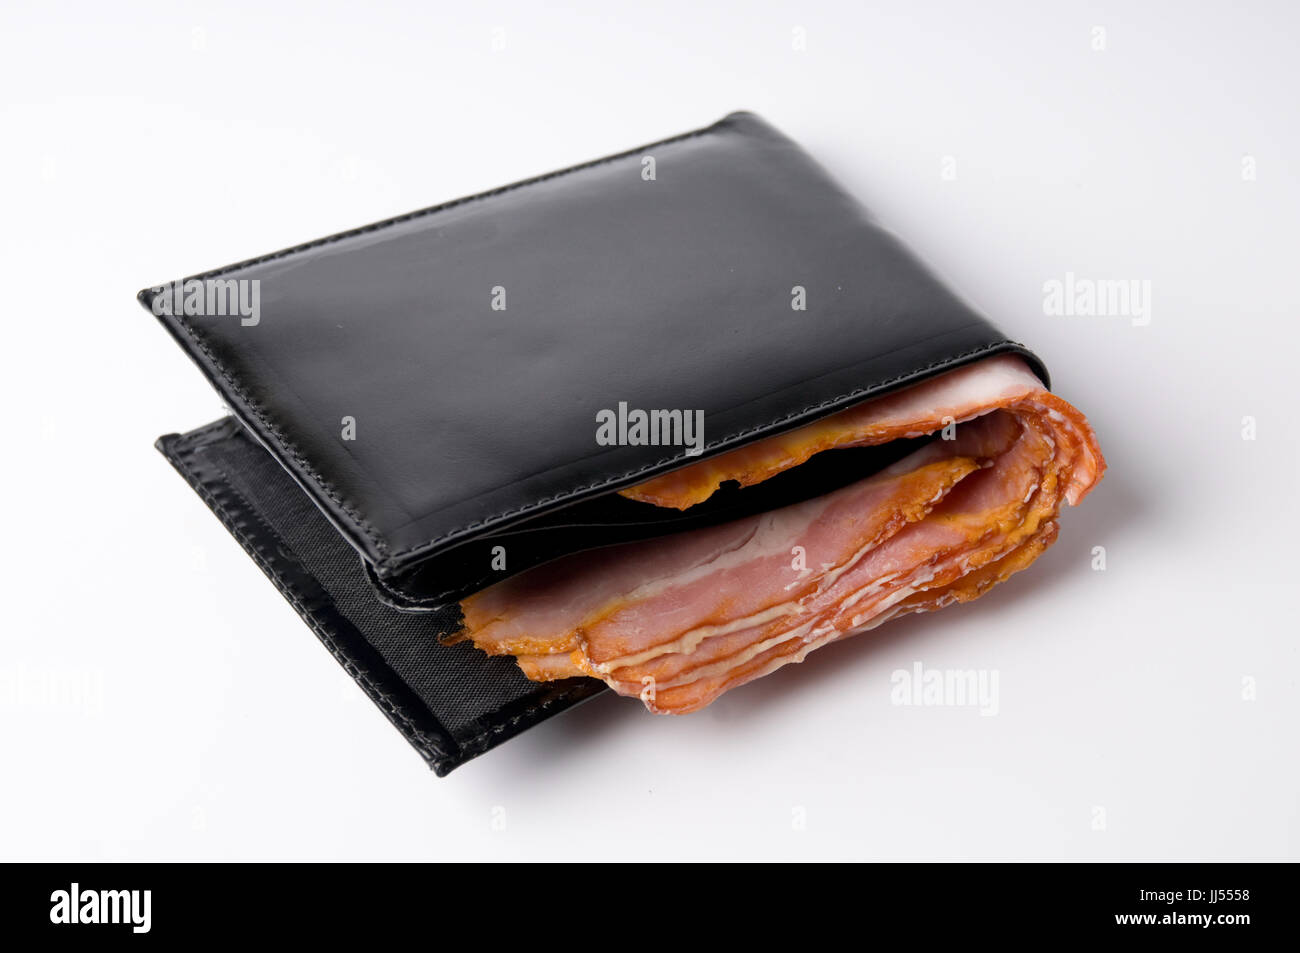 Wallet, Ham, São Paulo, Brazil Stock Photo - Alamy